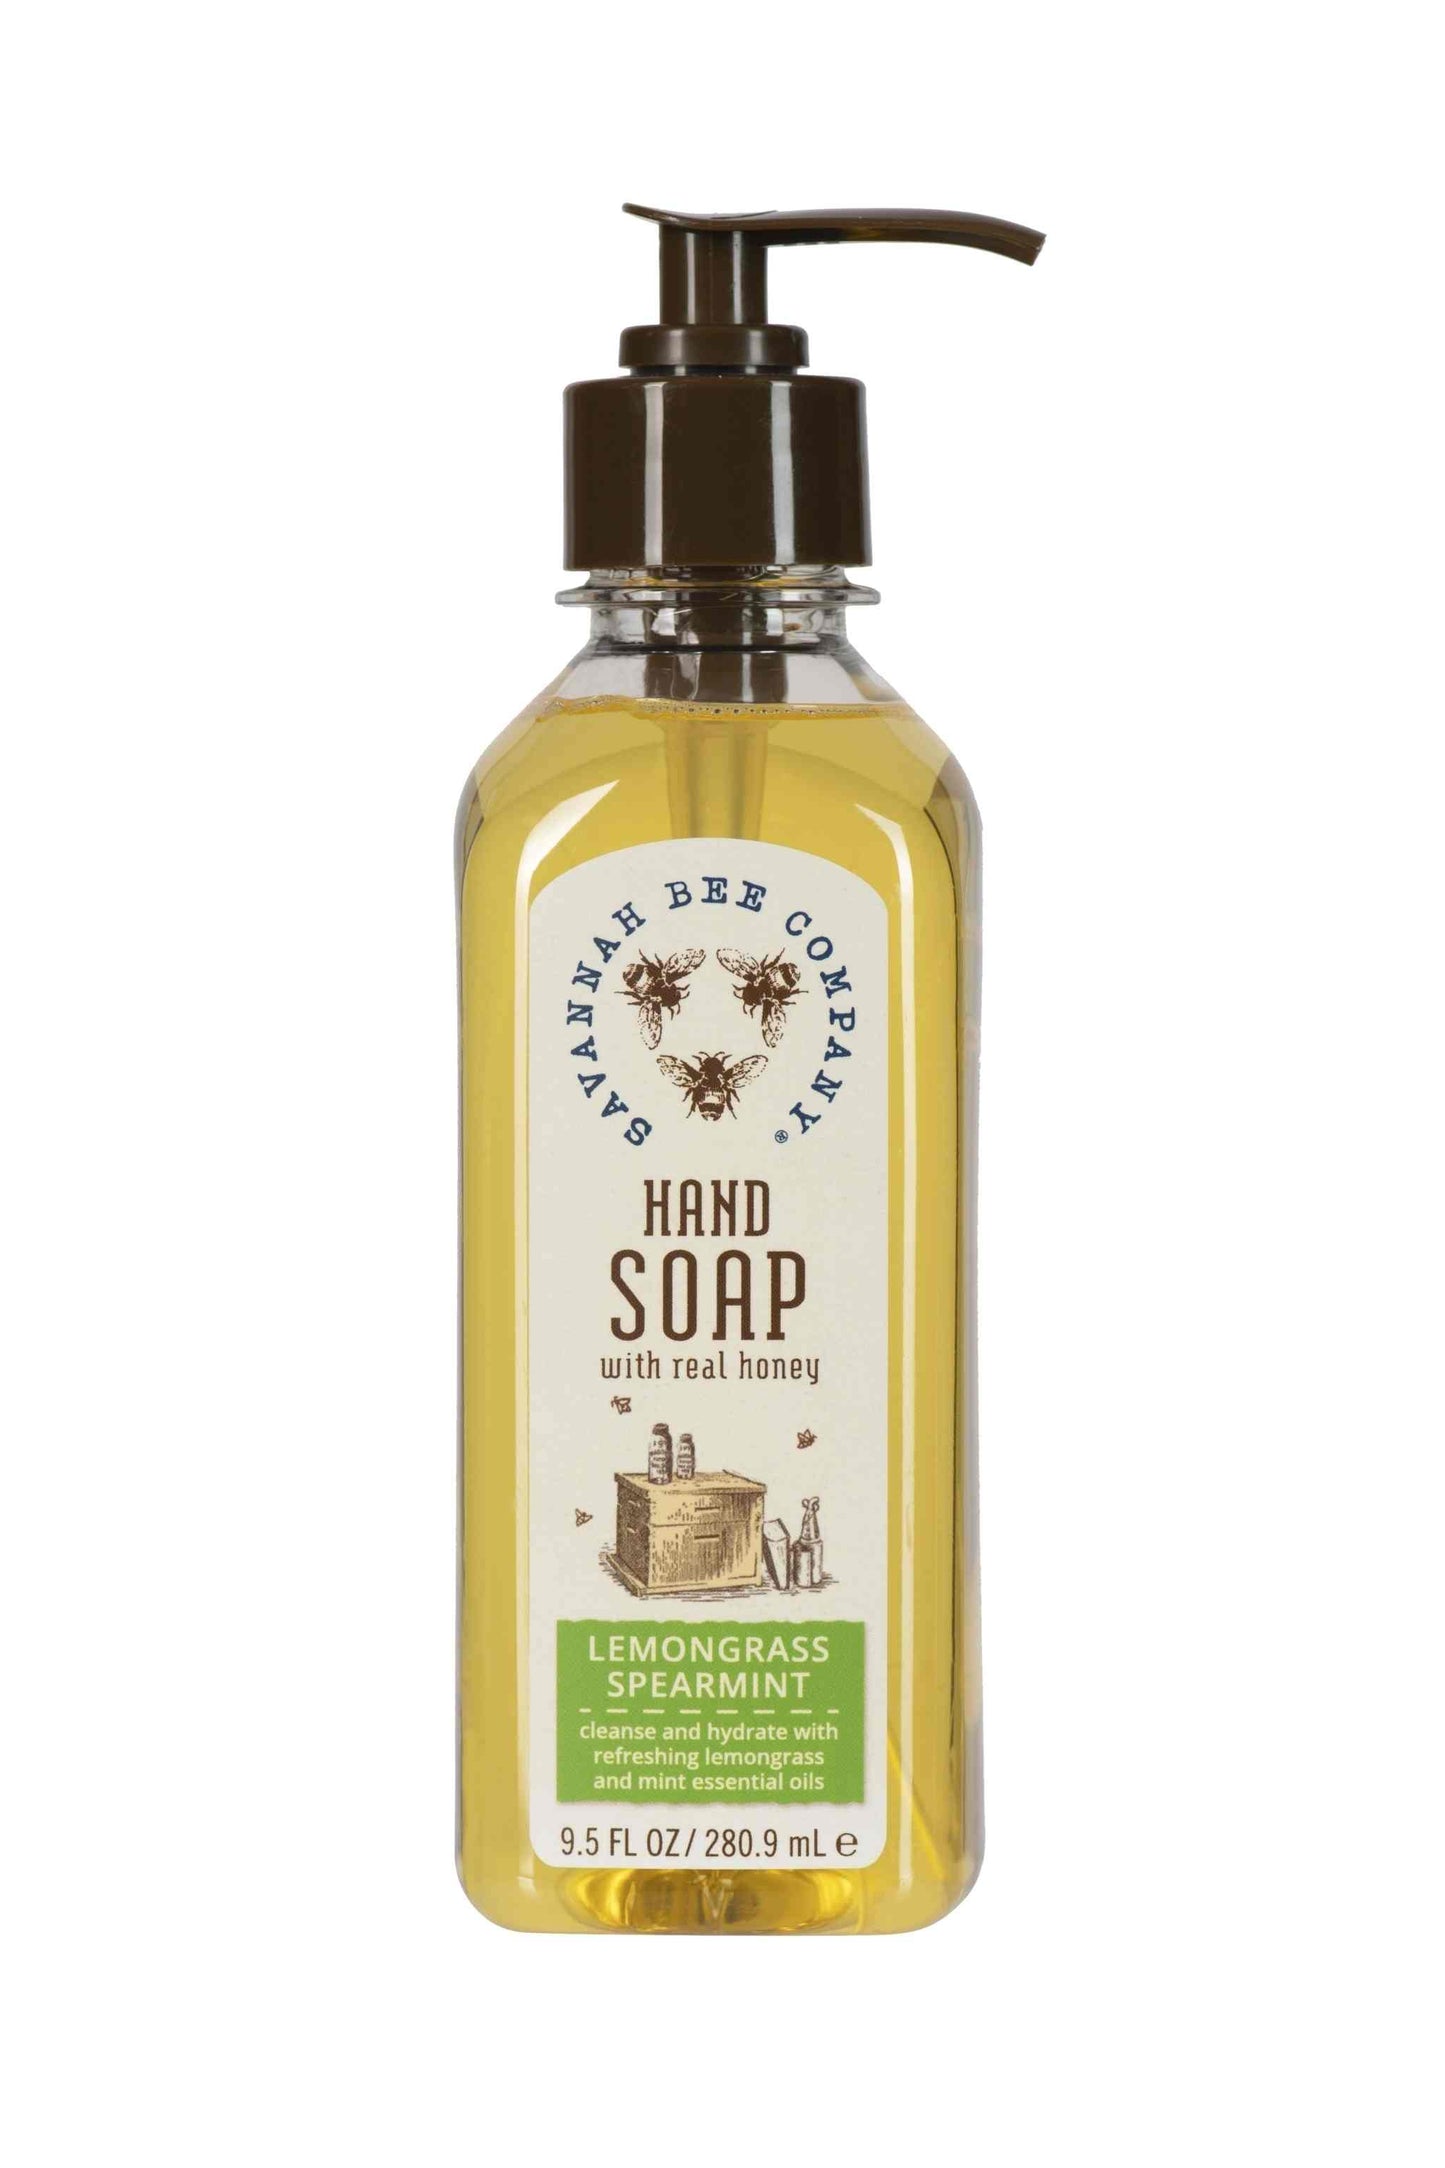 Lemongrass Spearmint Hand Soap 9.5 fl oz.  studio shot